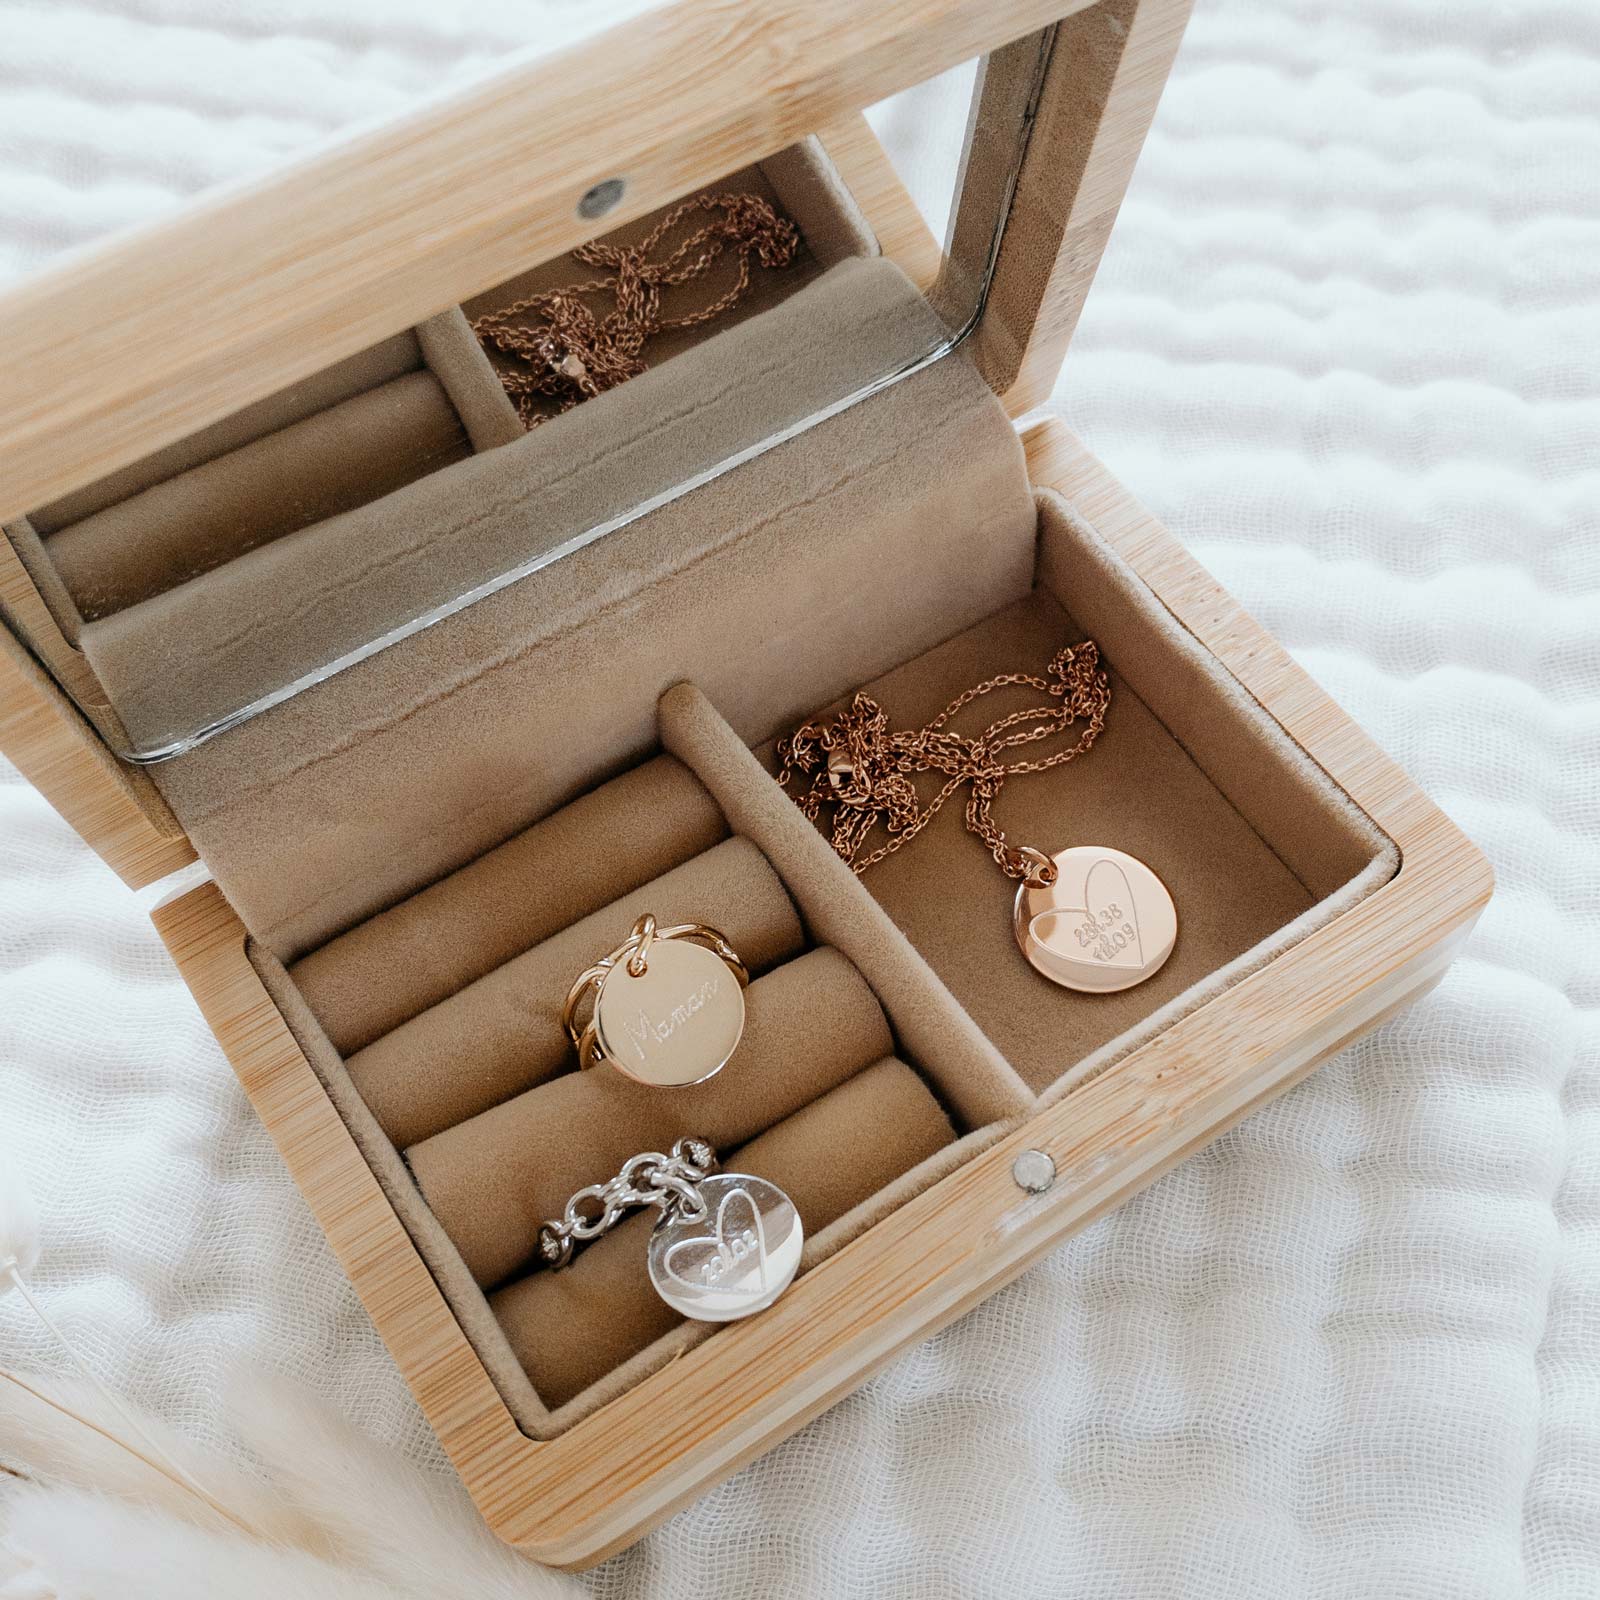 Boîte à bijoux personnalisée en bois - Maman - My Pretty Little Store